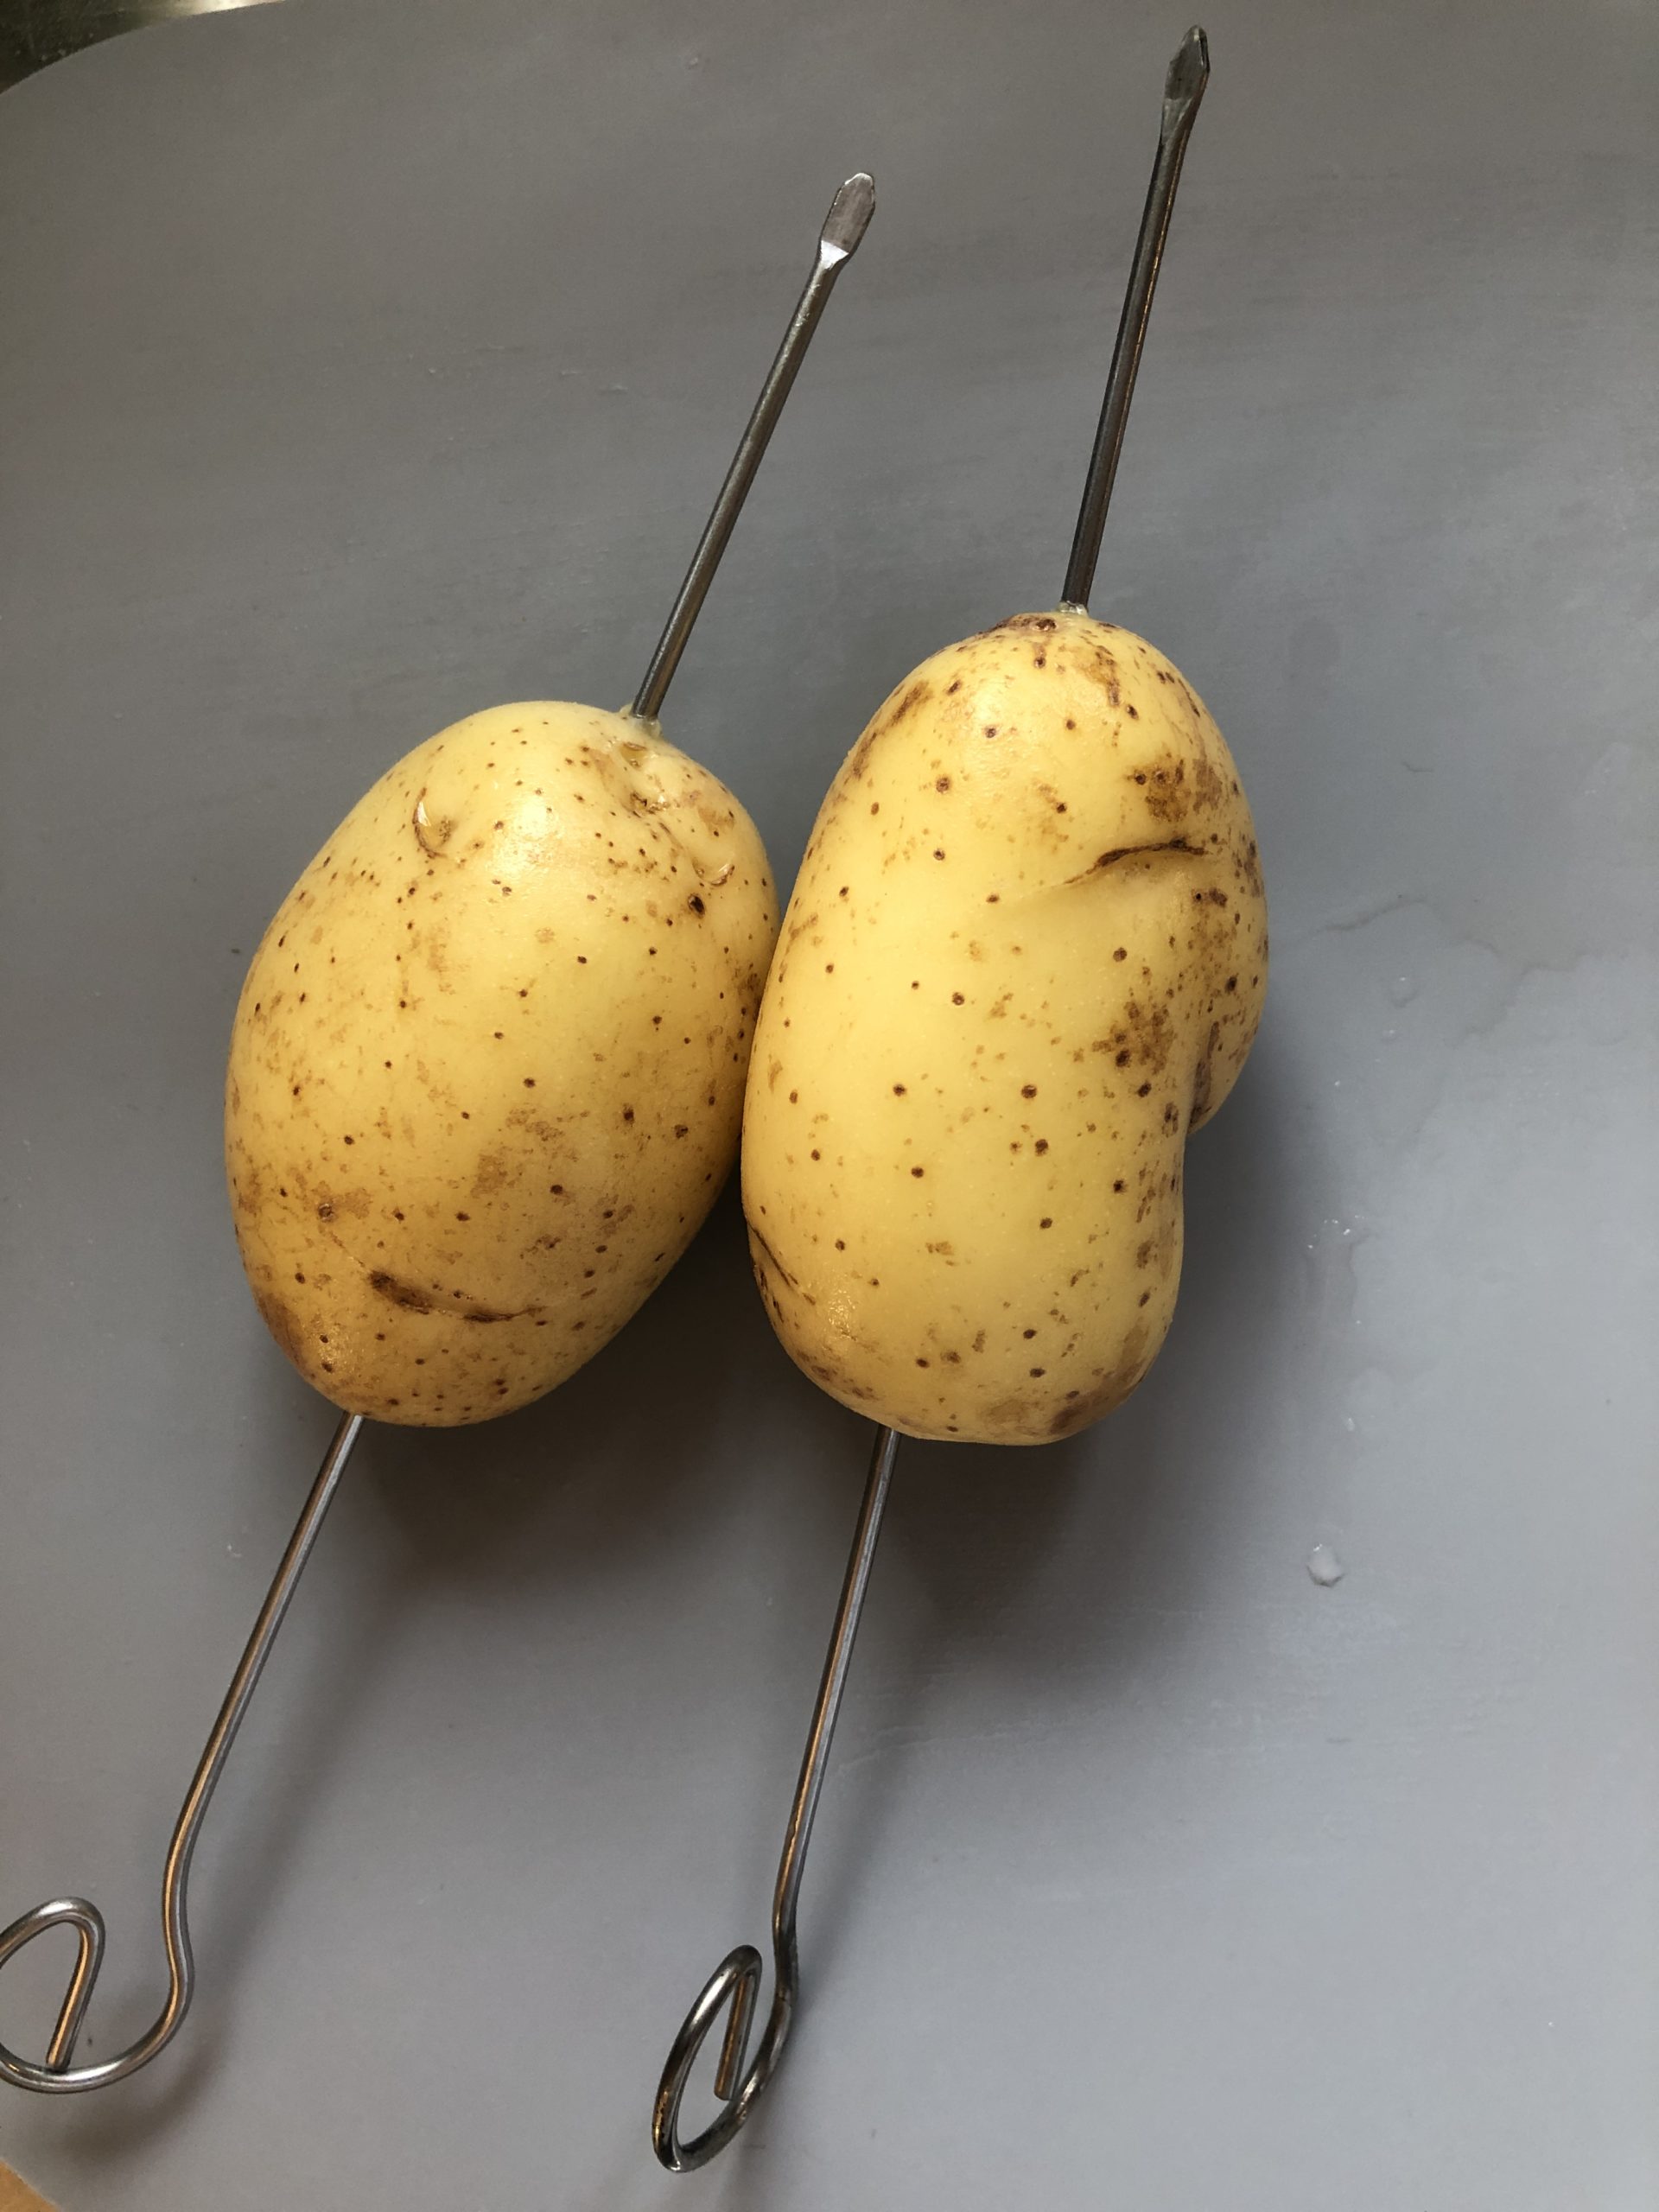 Bild zum Schritt 2 für das Bastel- und DIY-Abenteuer für Kinder: 'Durch jede Kartoffel der Länge nach einen Spieß stecken.'